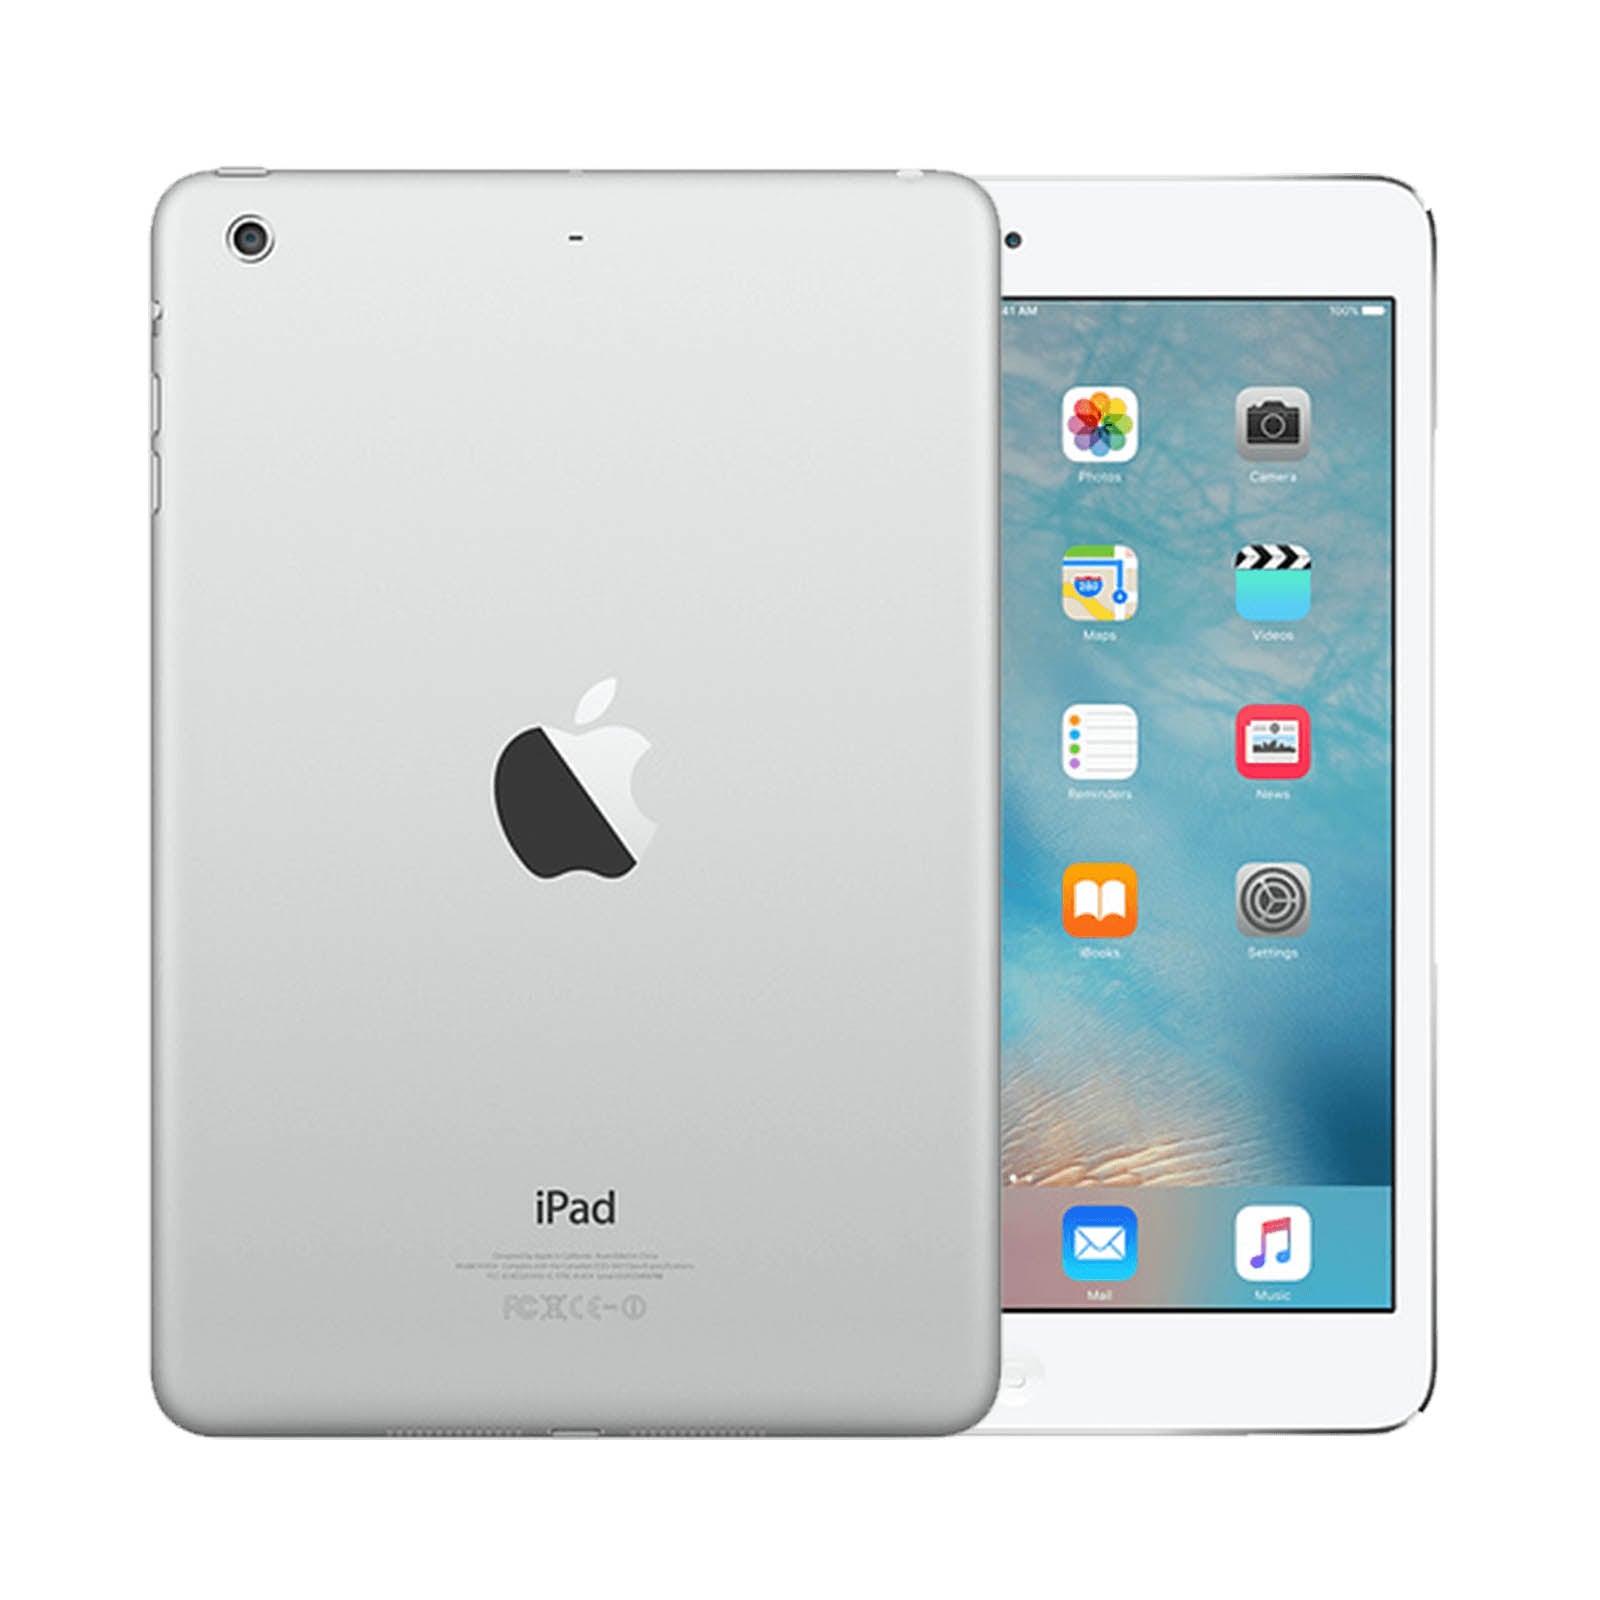 Apple iPad mini 2 16GB White Fair - Unlocked